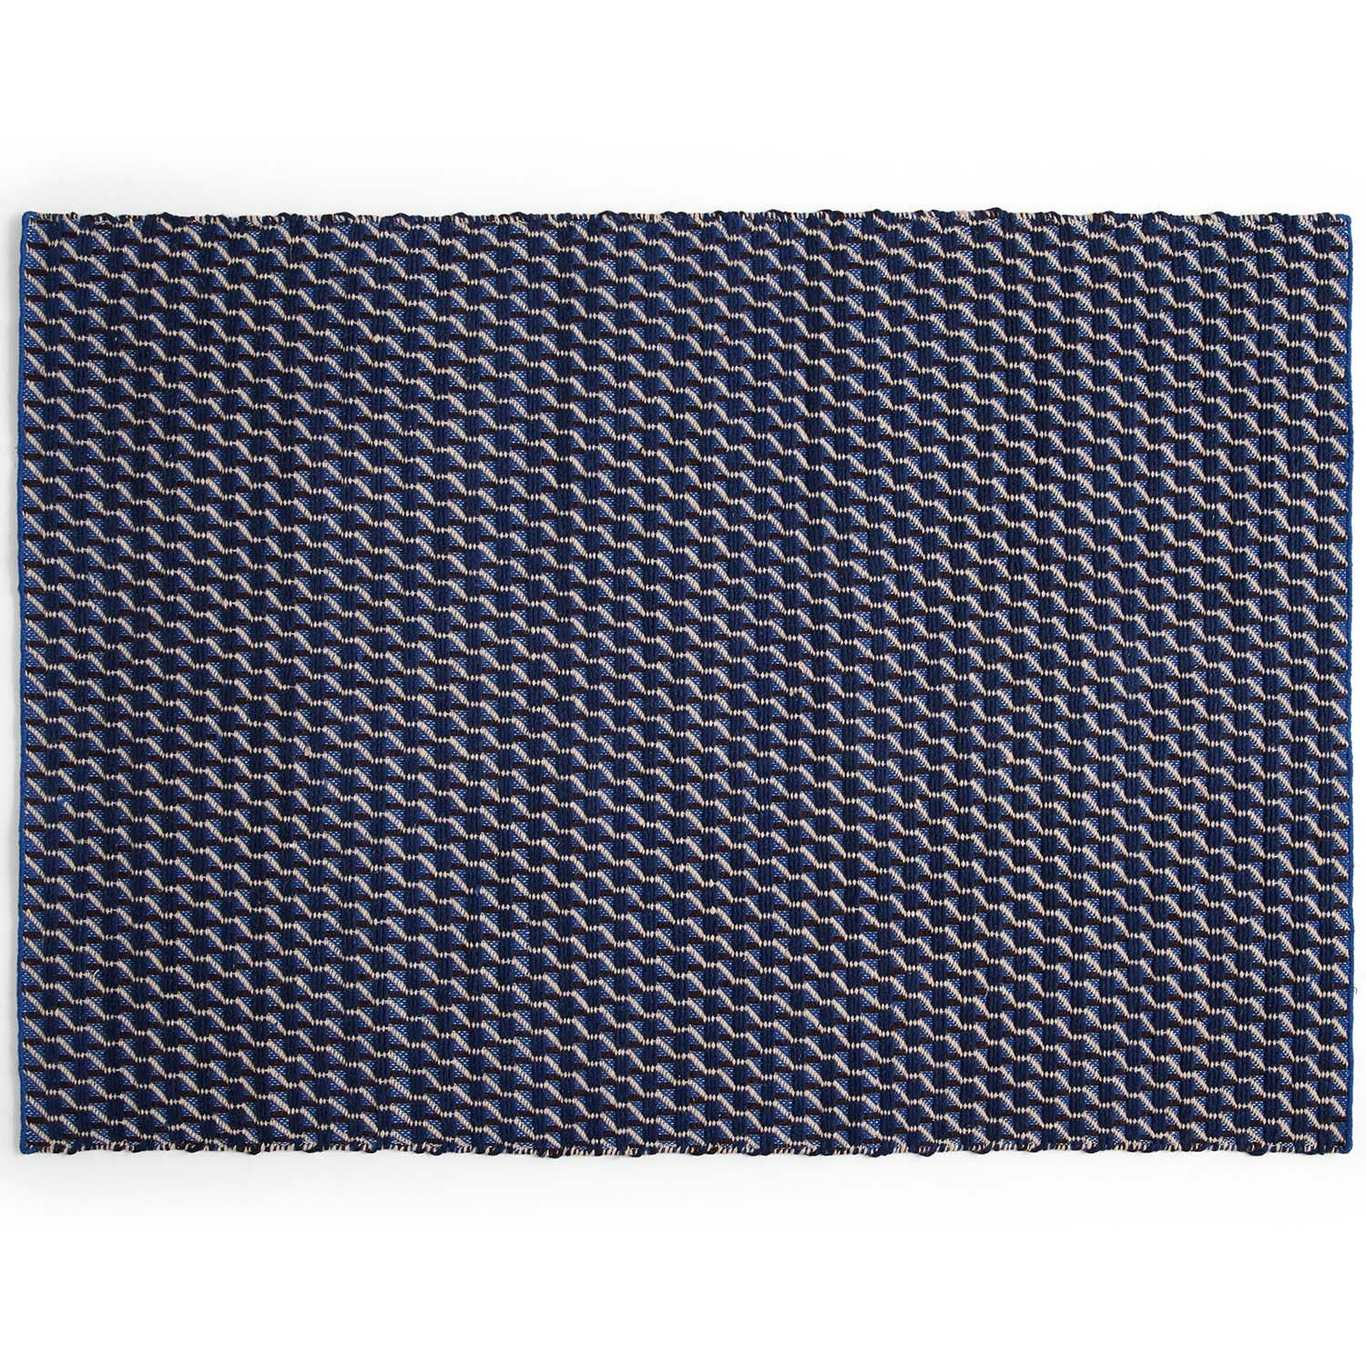 Channel Teppich Blau/Weiß, 140x200 cm